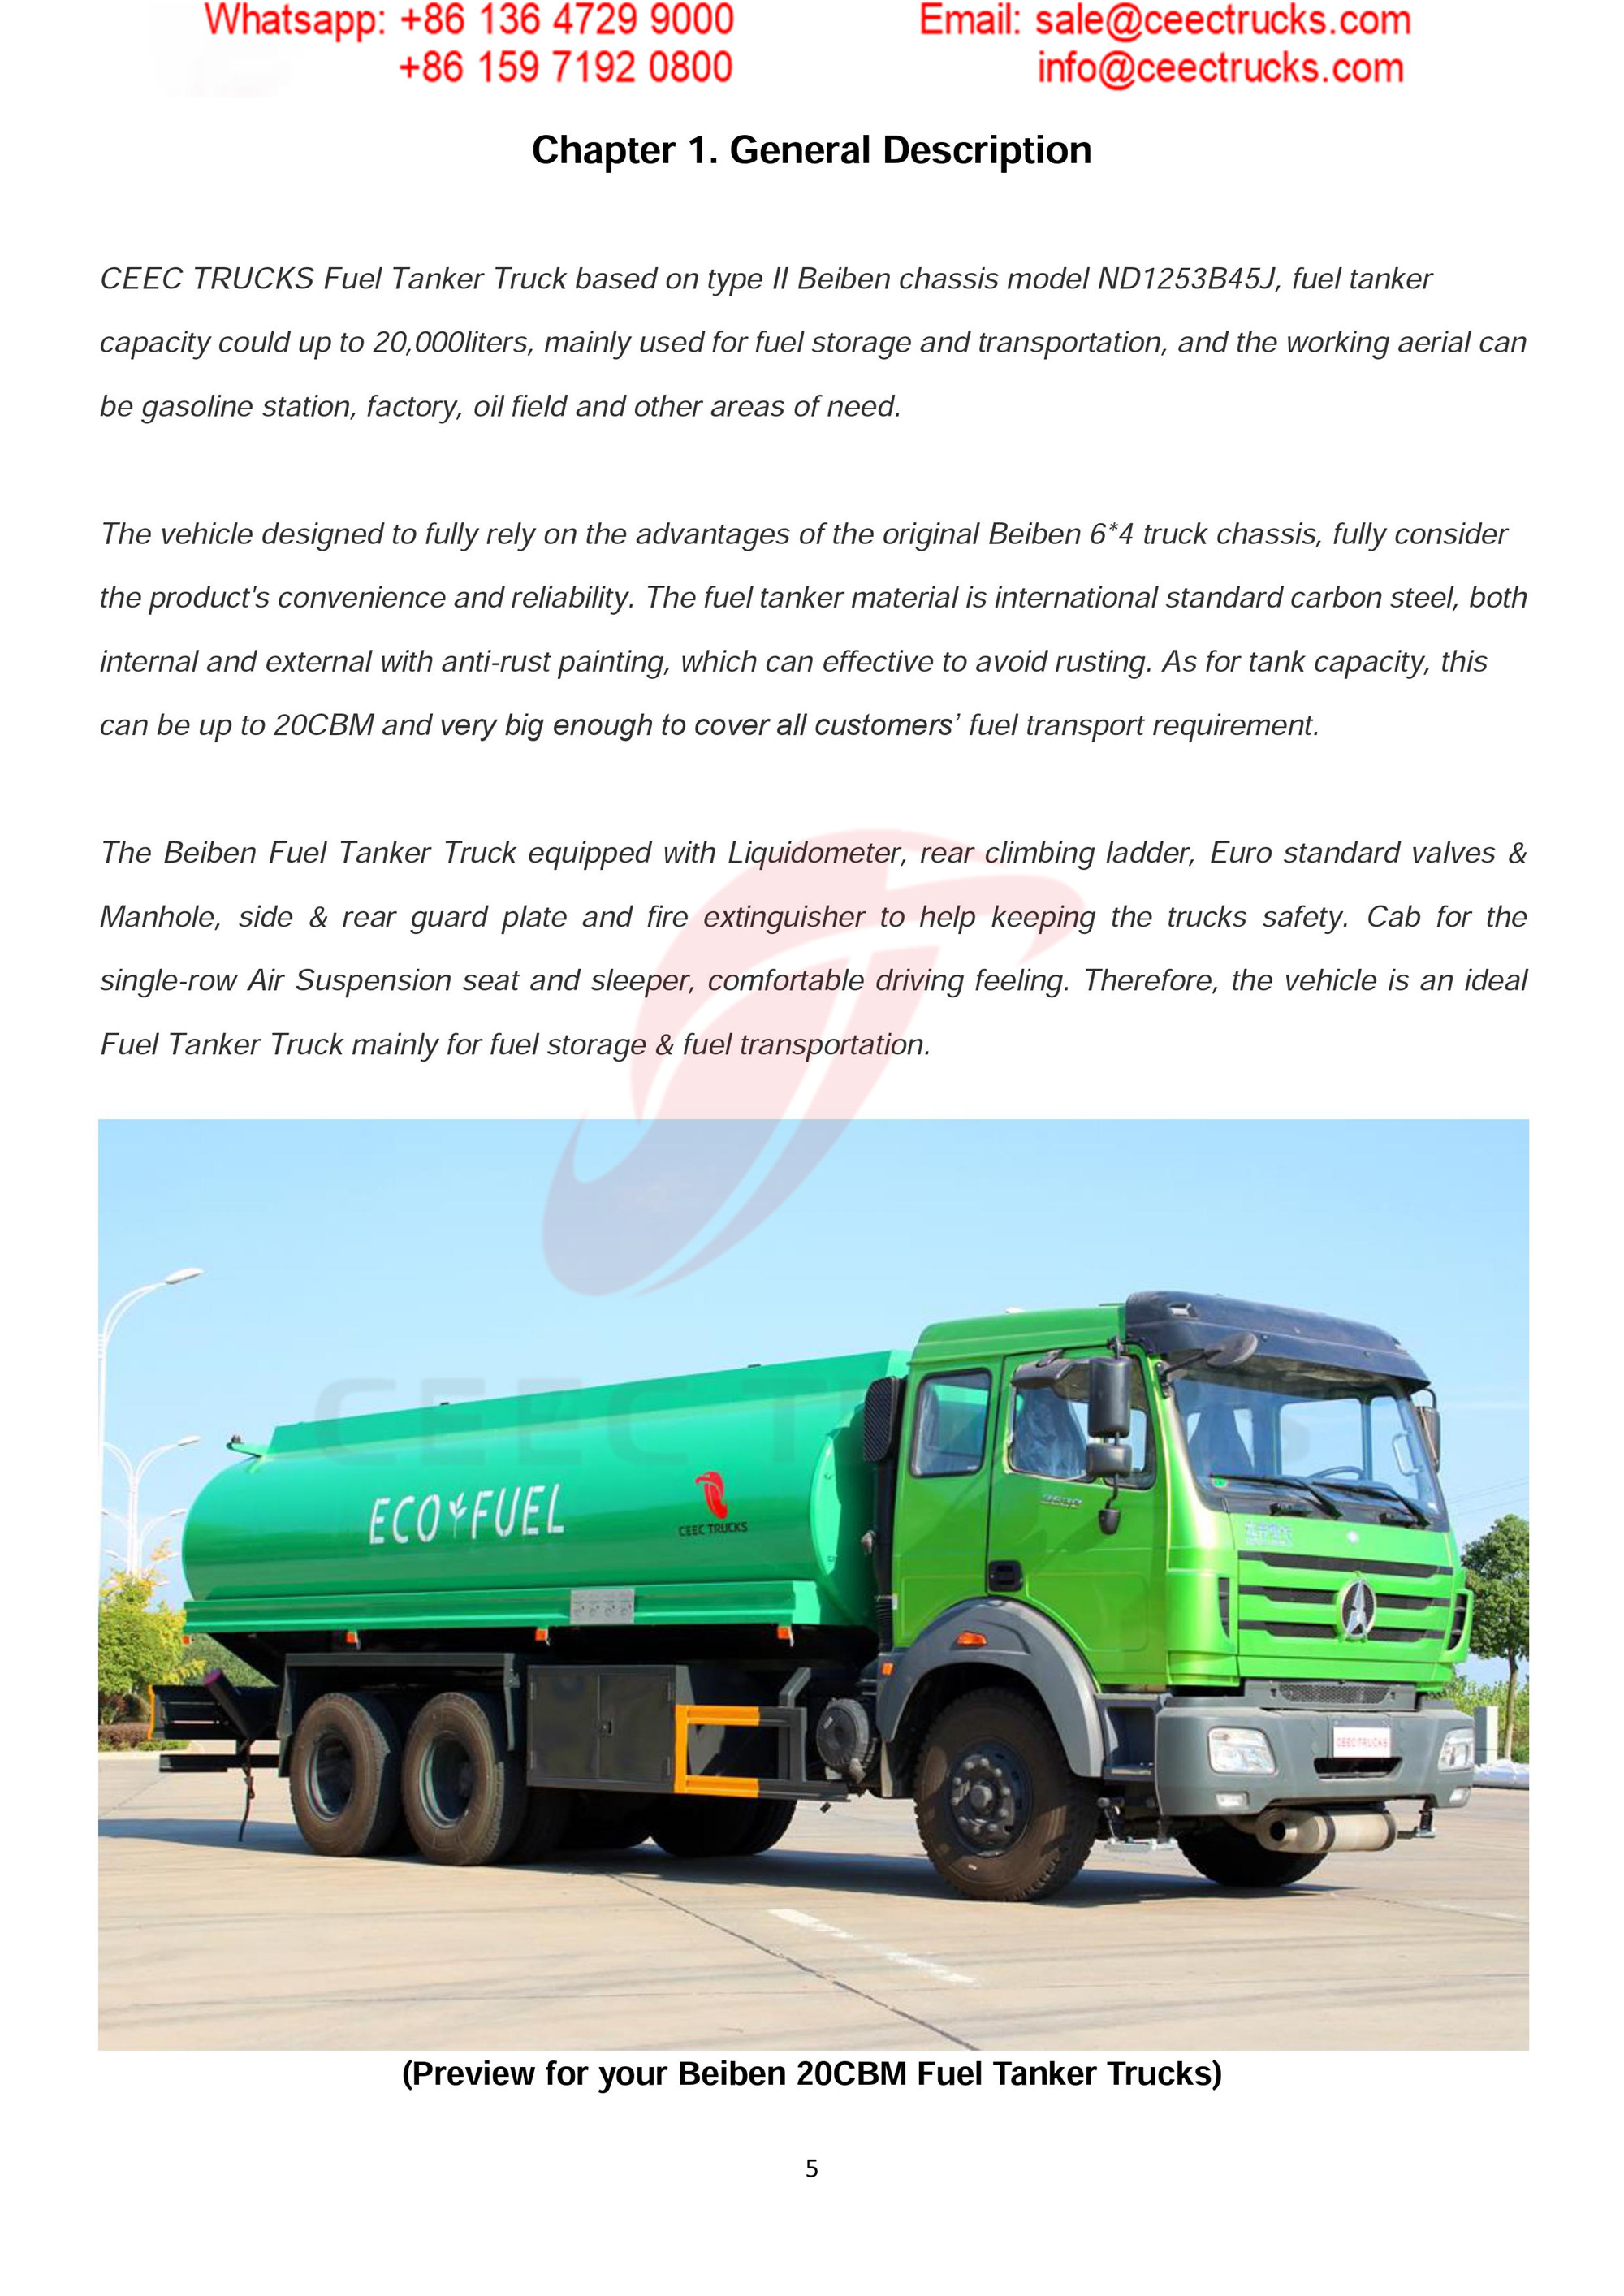 BEIBEN 2530 fuel tanker truck export Carribean Sea